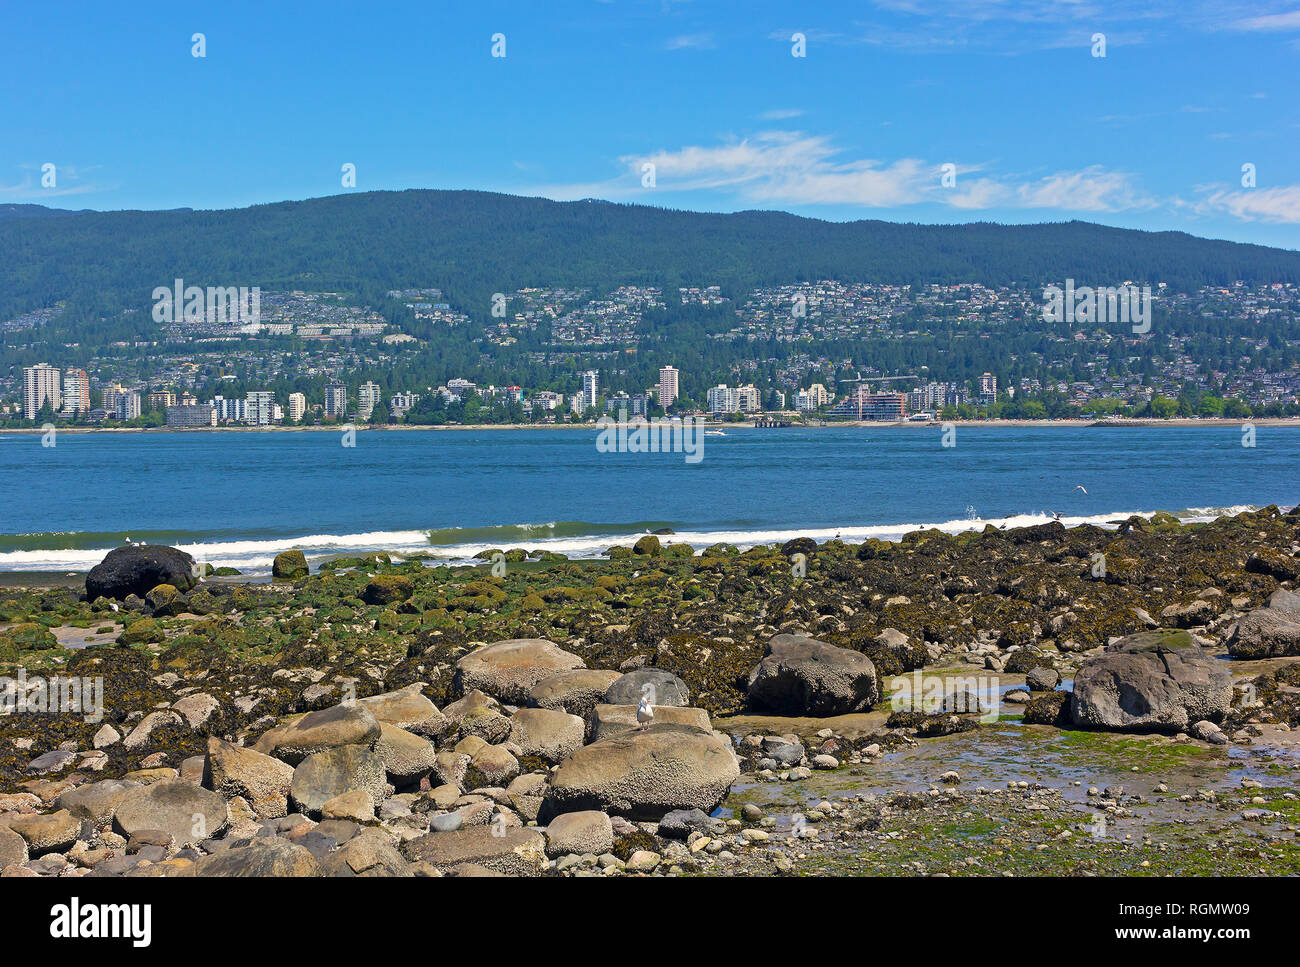 Felsen mit reichlich Nahrung für Vögel bei Ebbe und Vancouver suburban Panorama am Horizont. Sonnigen Sommermorgen auf einem Ufer des Stanley Parks mit seagu Stockfoto